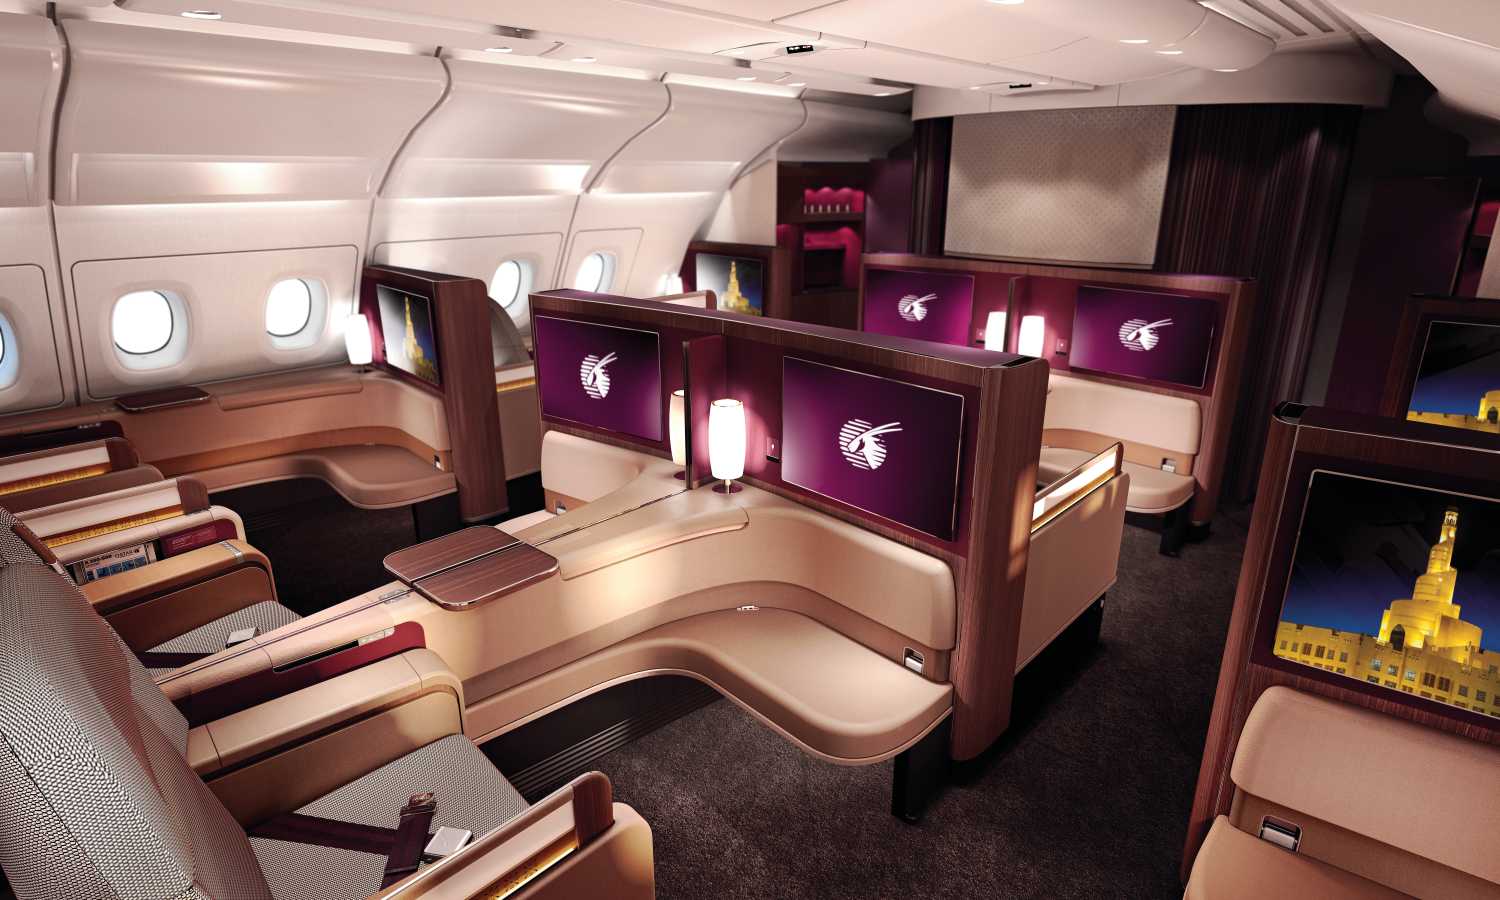 Qatar Airways First Class Cabin - Airbus A380